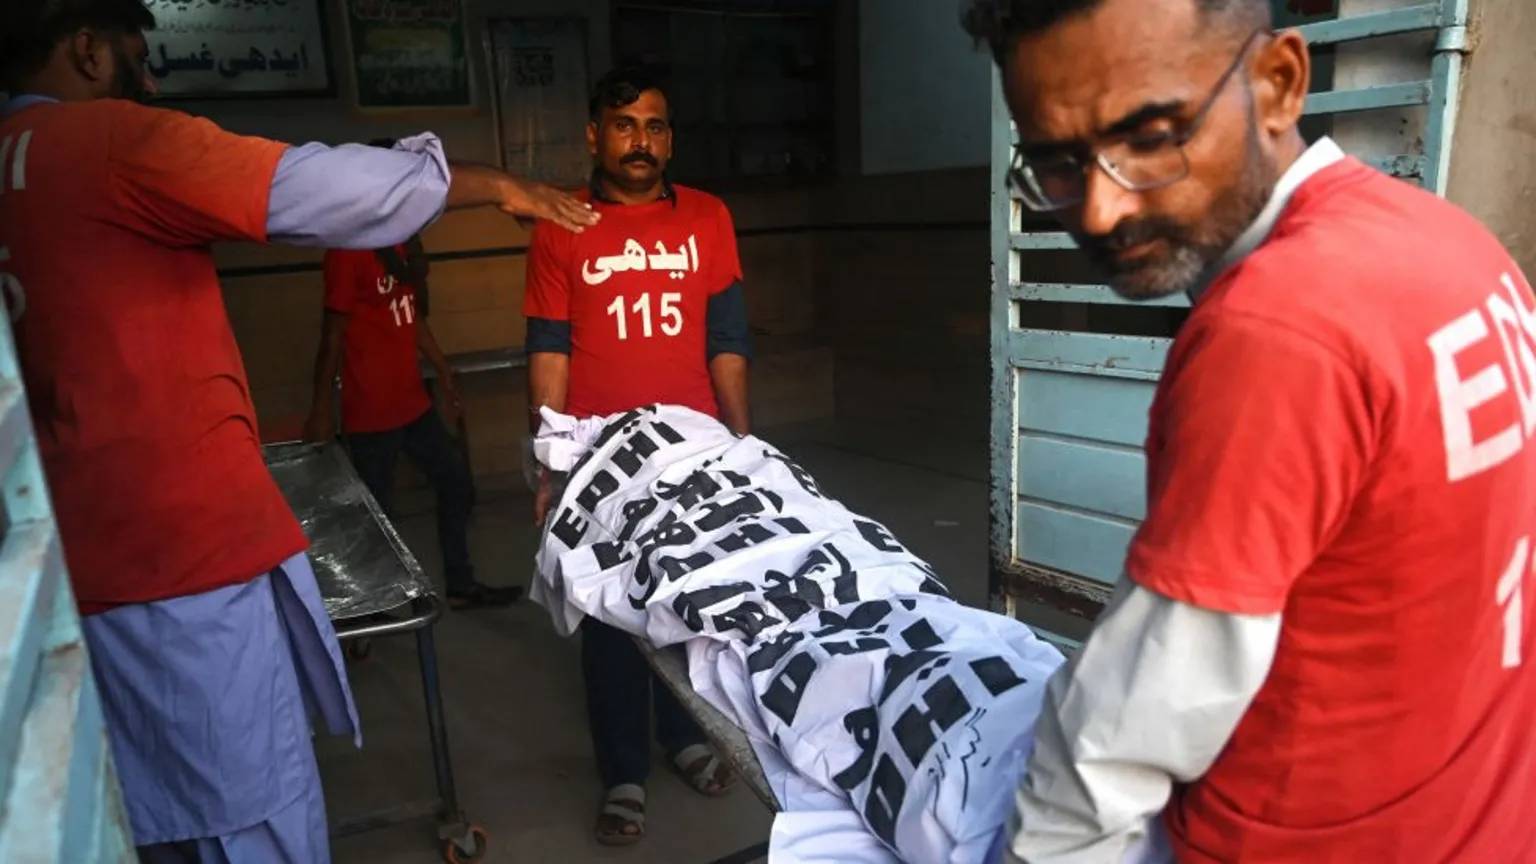 bayram kazası: 17 pakistanlı hacı öldü, onlarca kişi yaralandı